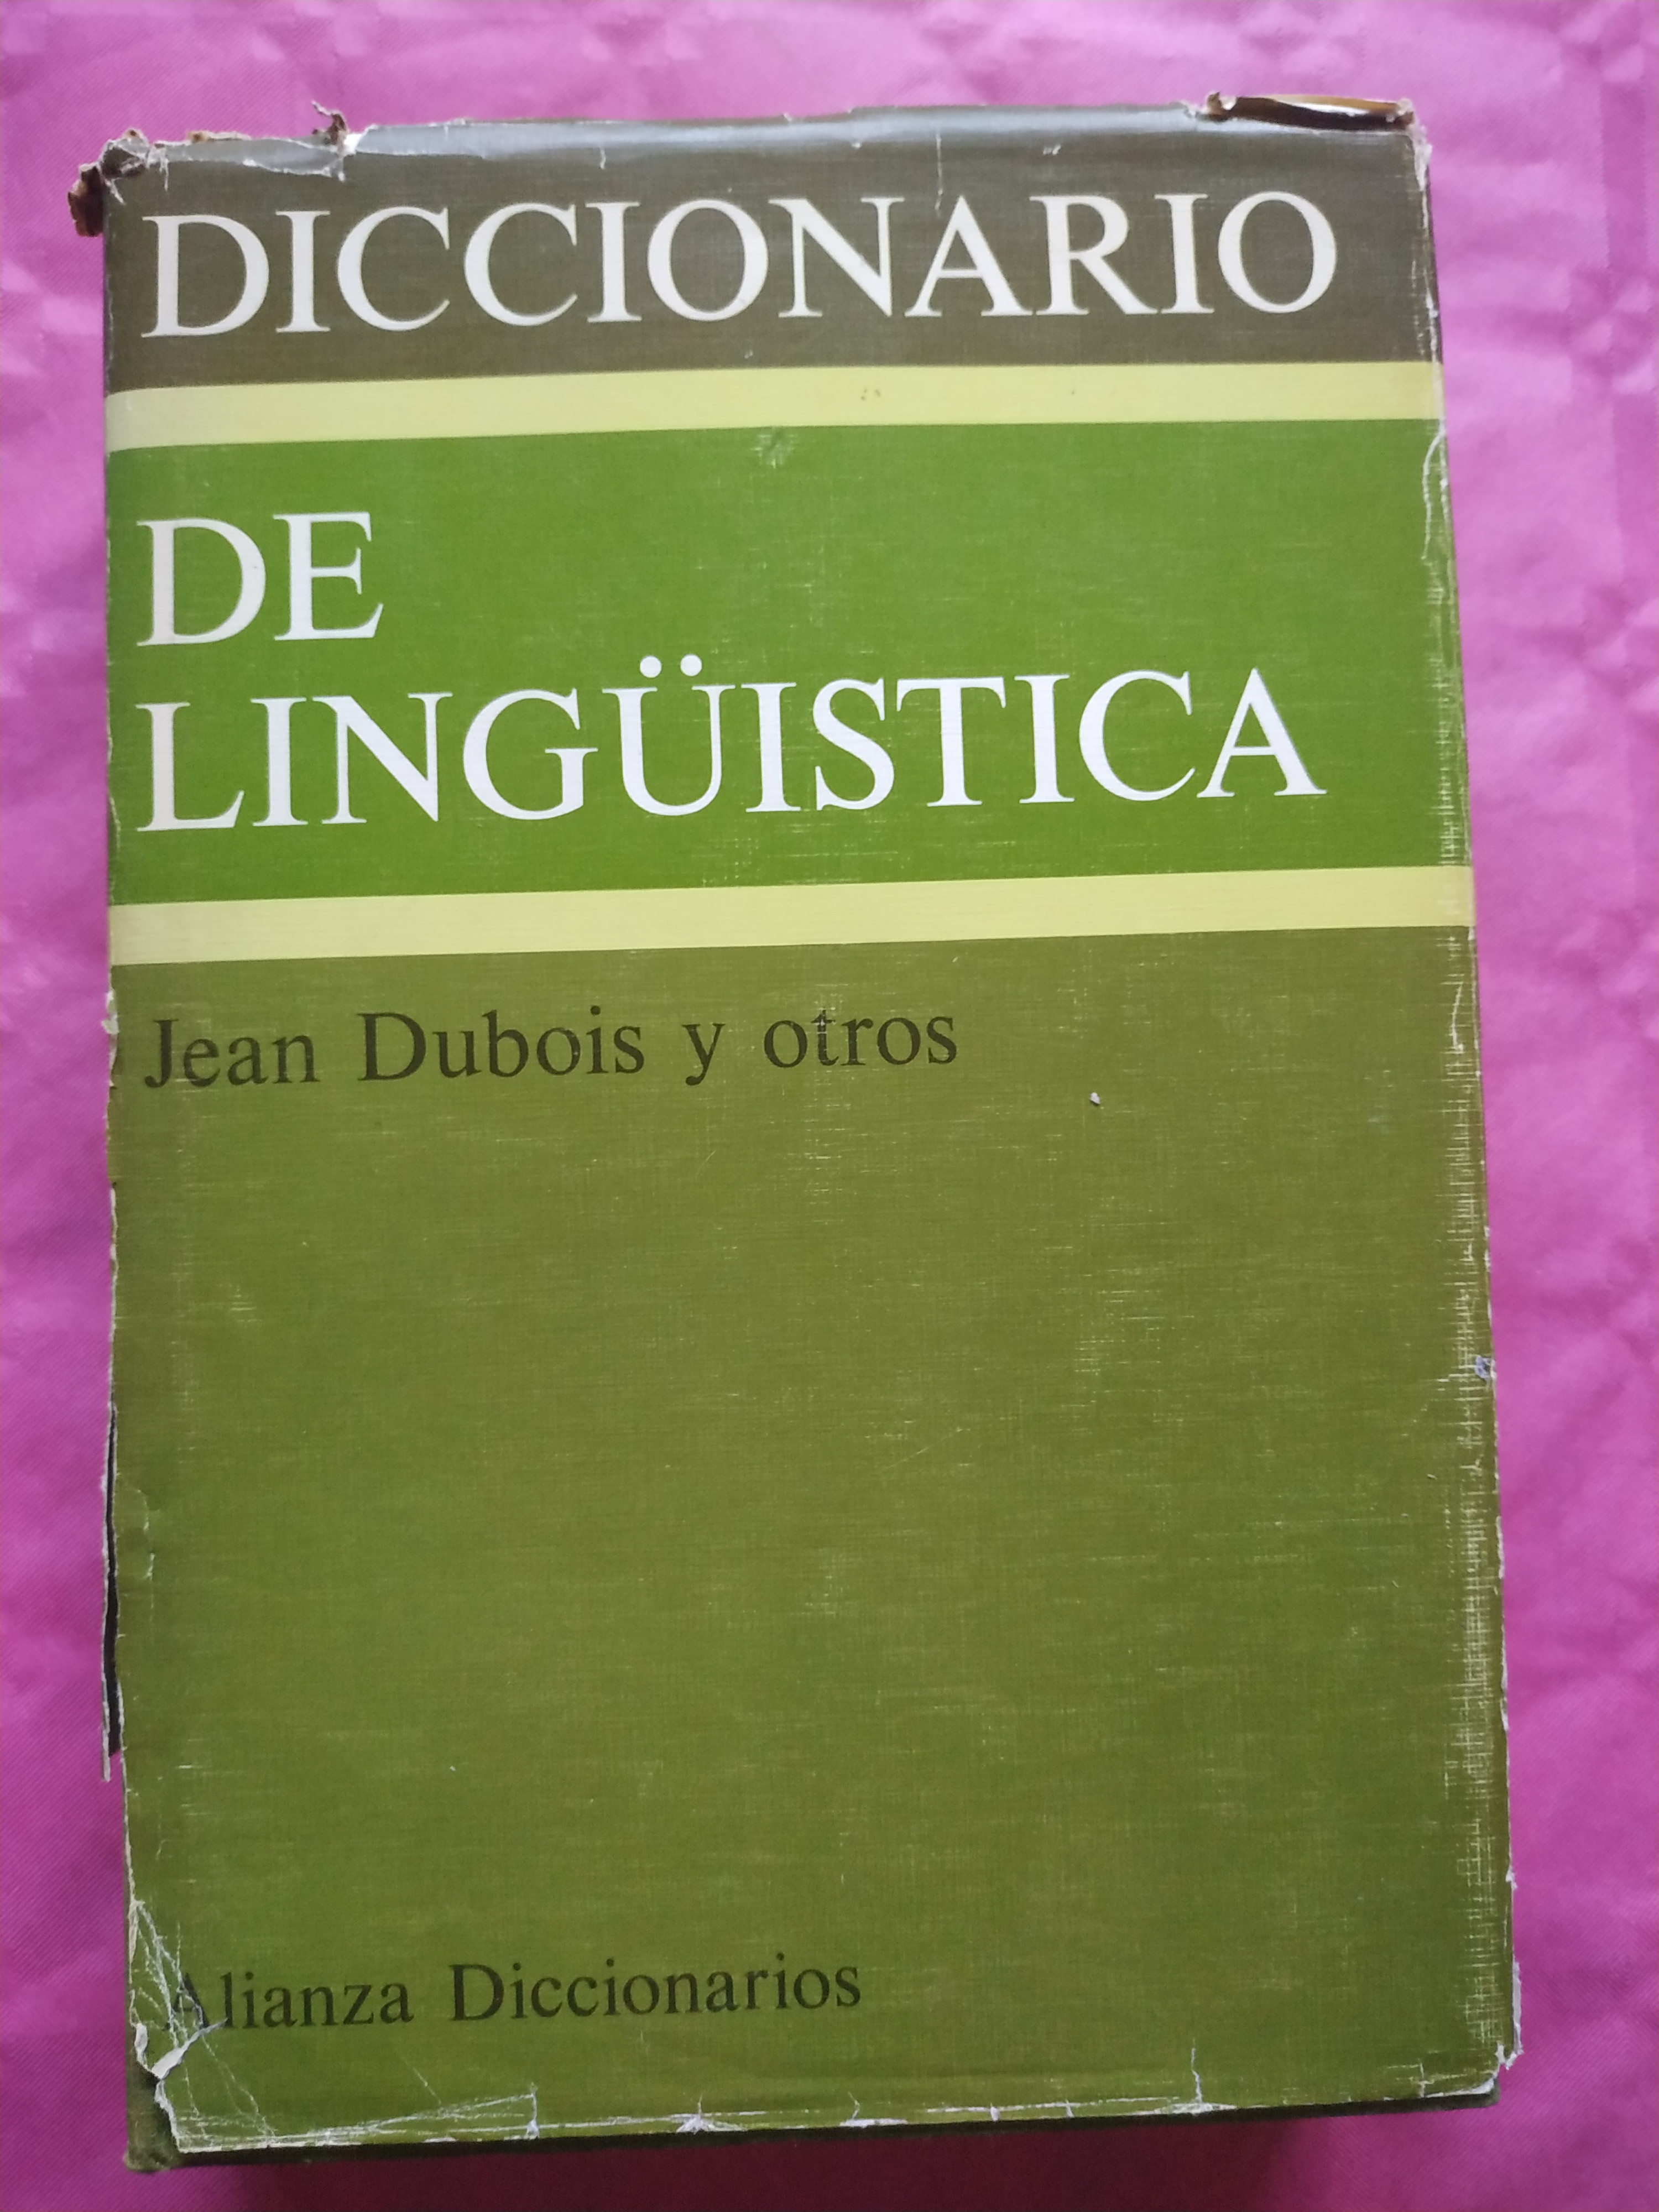 Diccionario de lingüística - Dubois, Jean y otros.